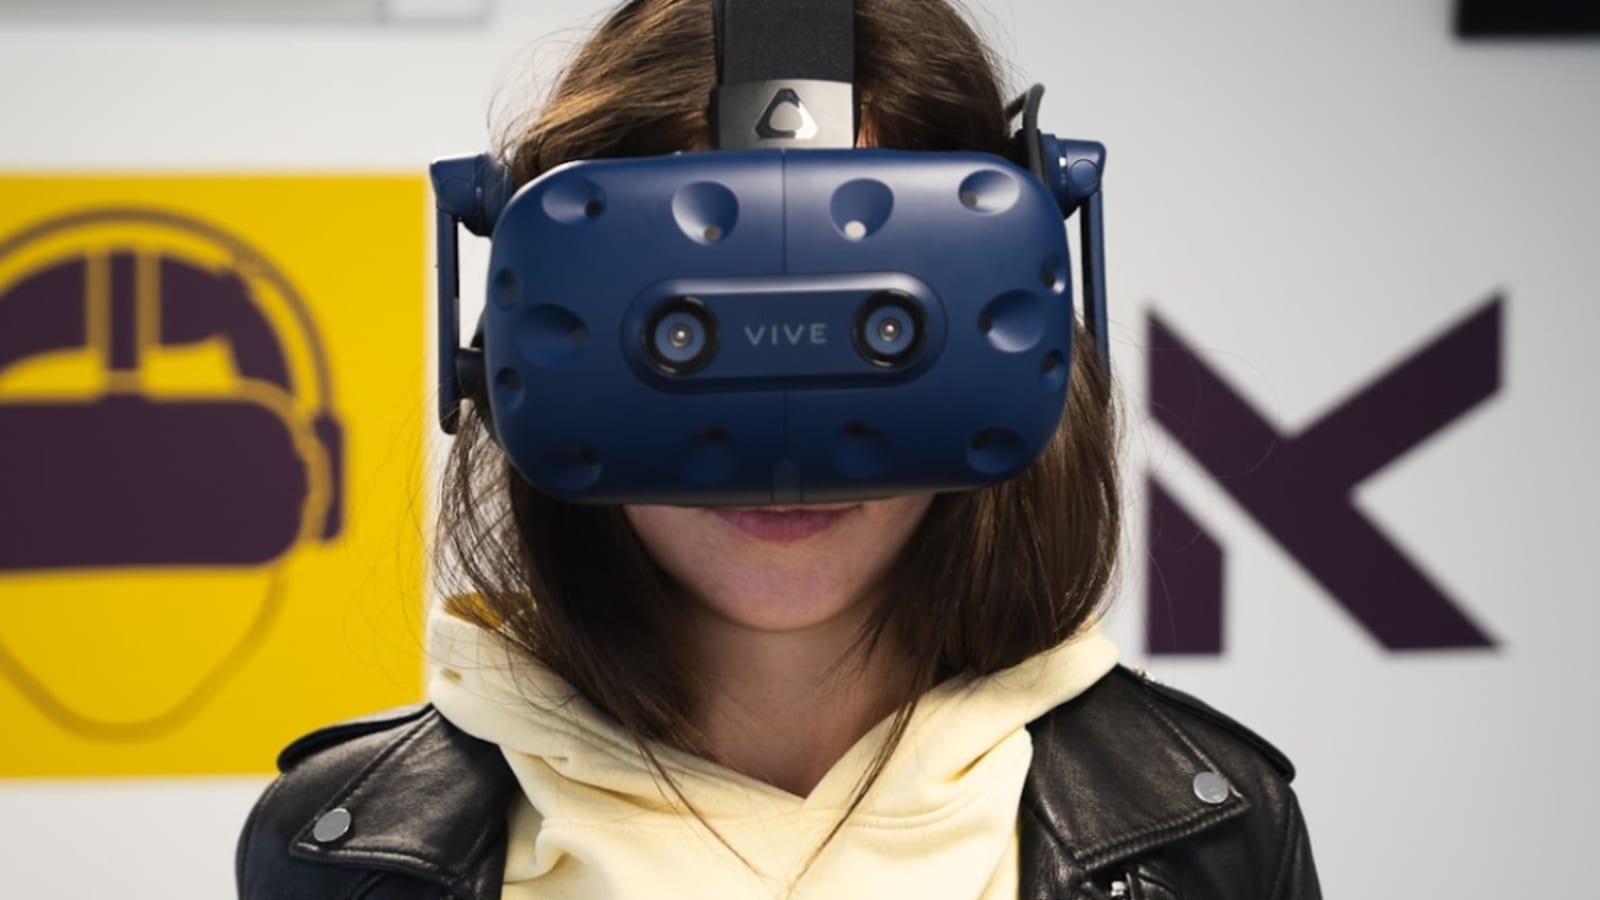 Les casques de réalité virtuelle sont-ils dangereux pour la santé ?